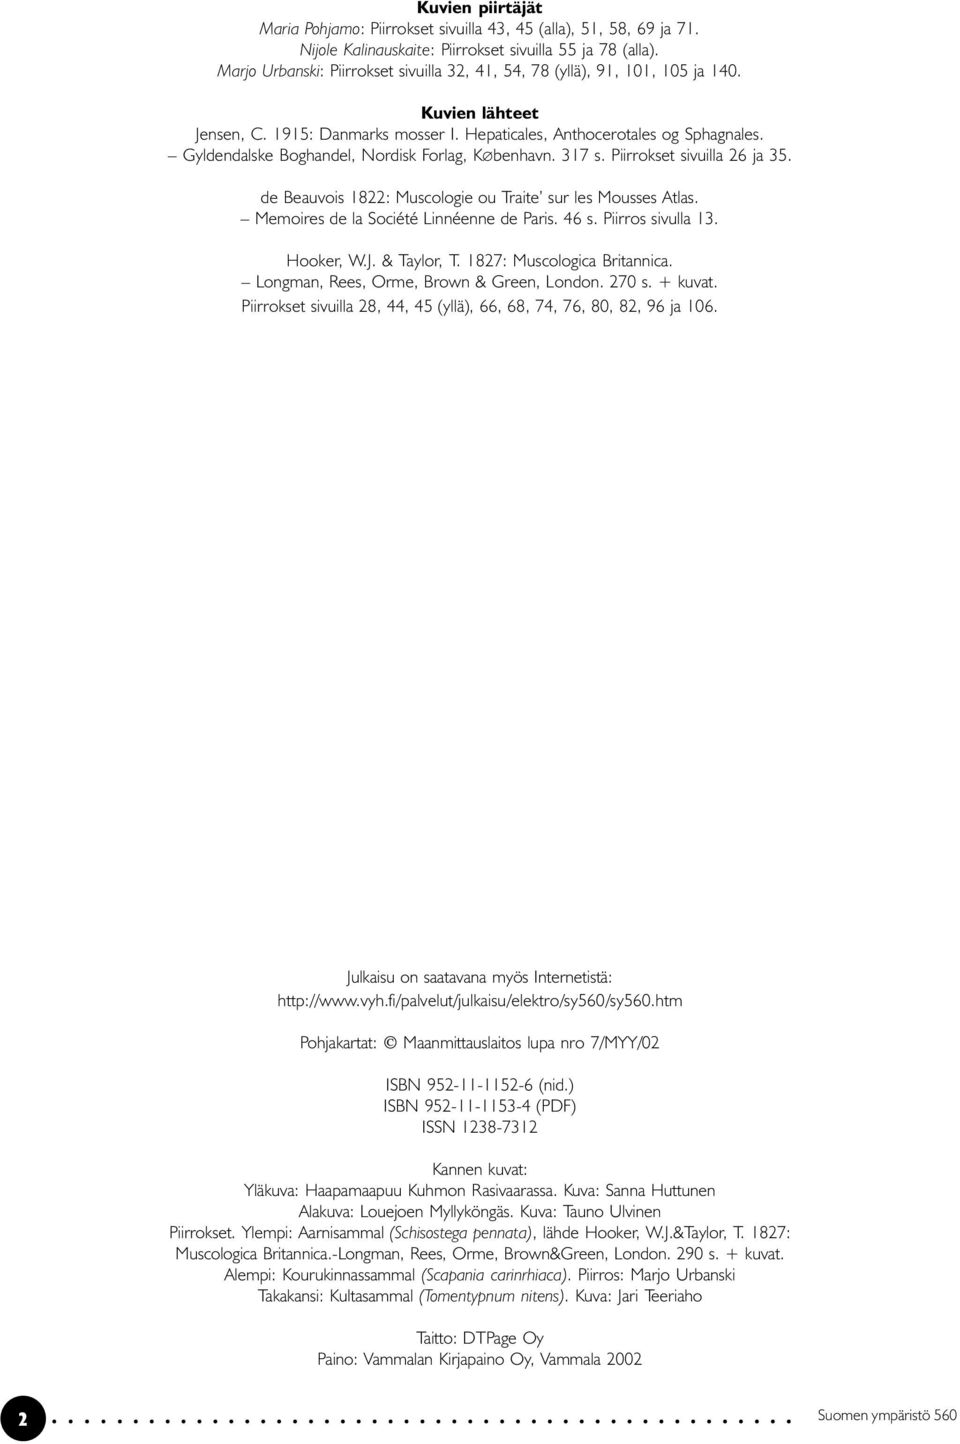 Gyldendalske Boghandel, Nordisk Forlag, K benhavn. 317 s. Piirrokset sivuilla 26 ja 35. de Beauvois 1822: Muscologie ou Traite sur les Mousses Atlas. Memoires de la Société Linnéenne de Paris. 46 s.